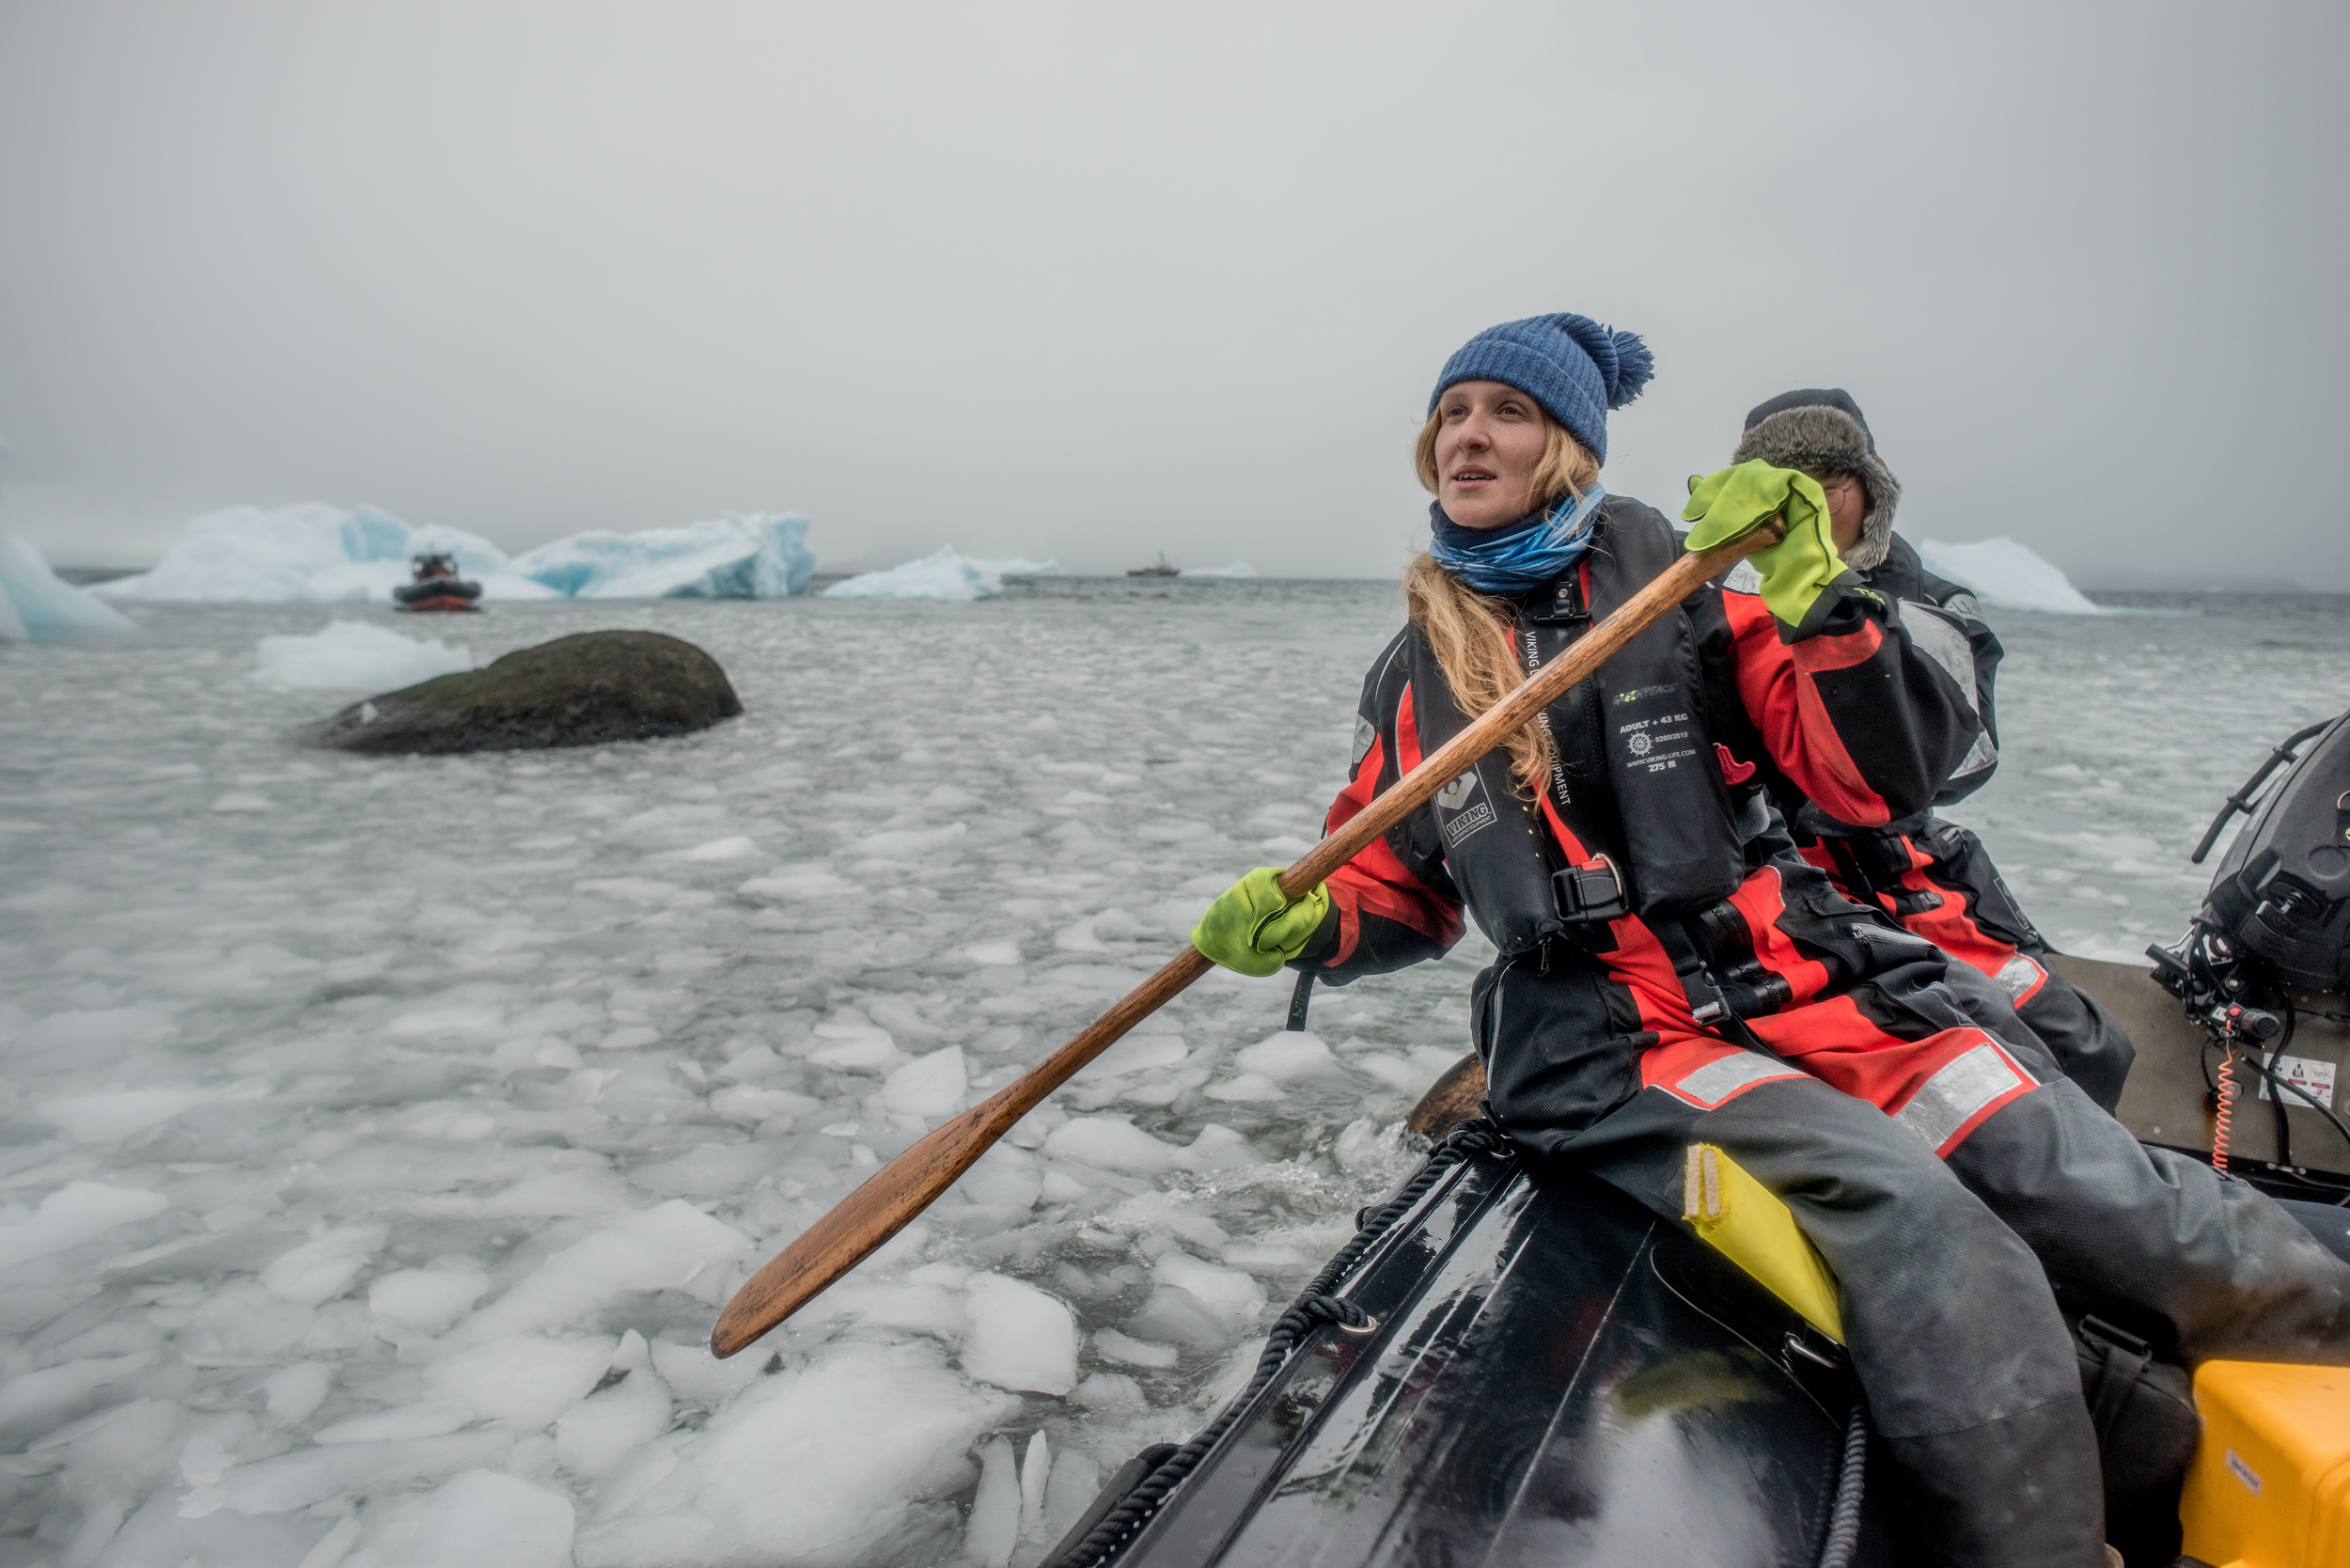 La campaigner al frente de la expedición, Louisa Casson, ayuda a manejar un bote inflable en la Antártida. © Tomás Munita / Greenpeace